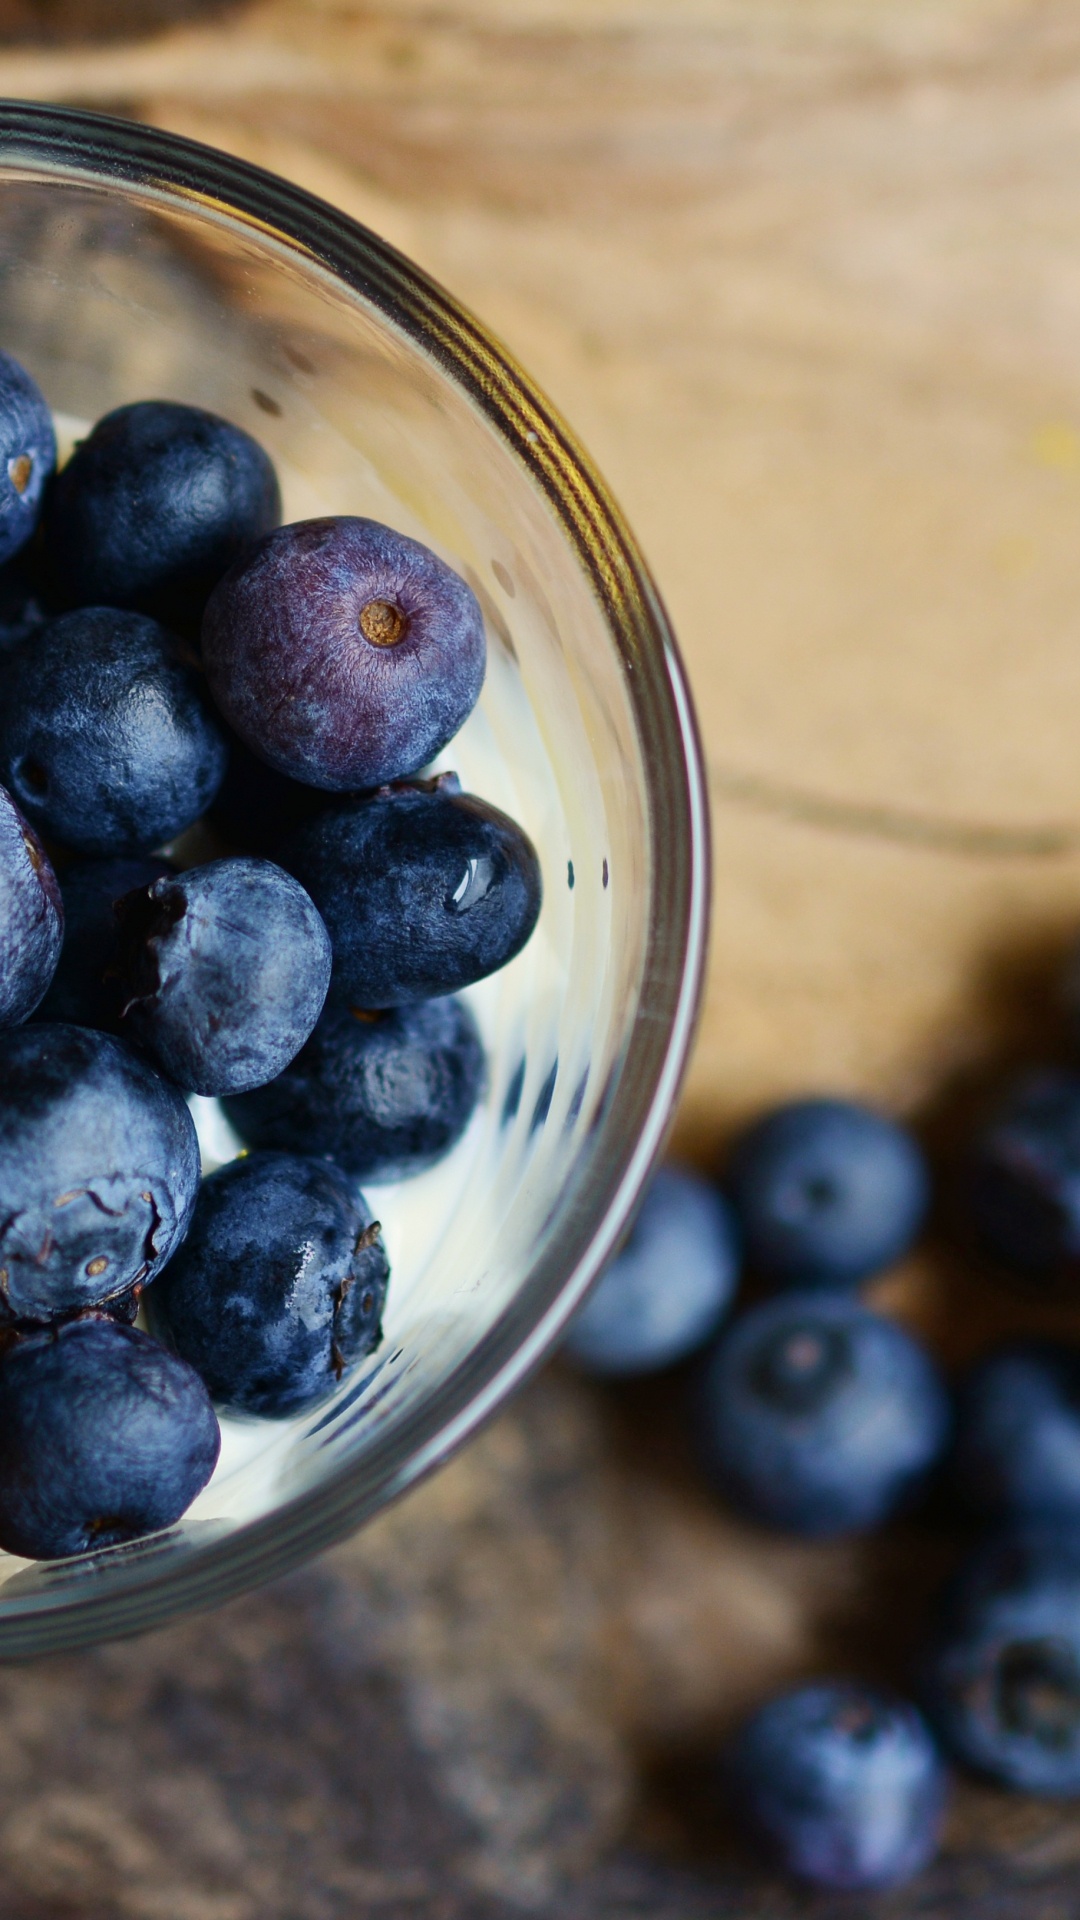 蓝莓, 食品, 梅斯皮诺亚, 营养, 健康 壁纸 1080x1920 允许